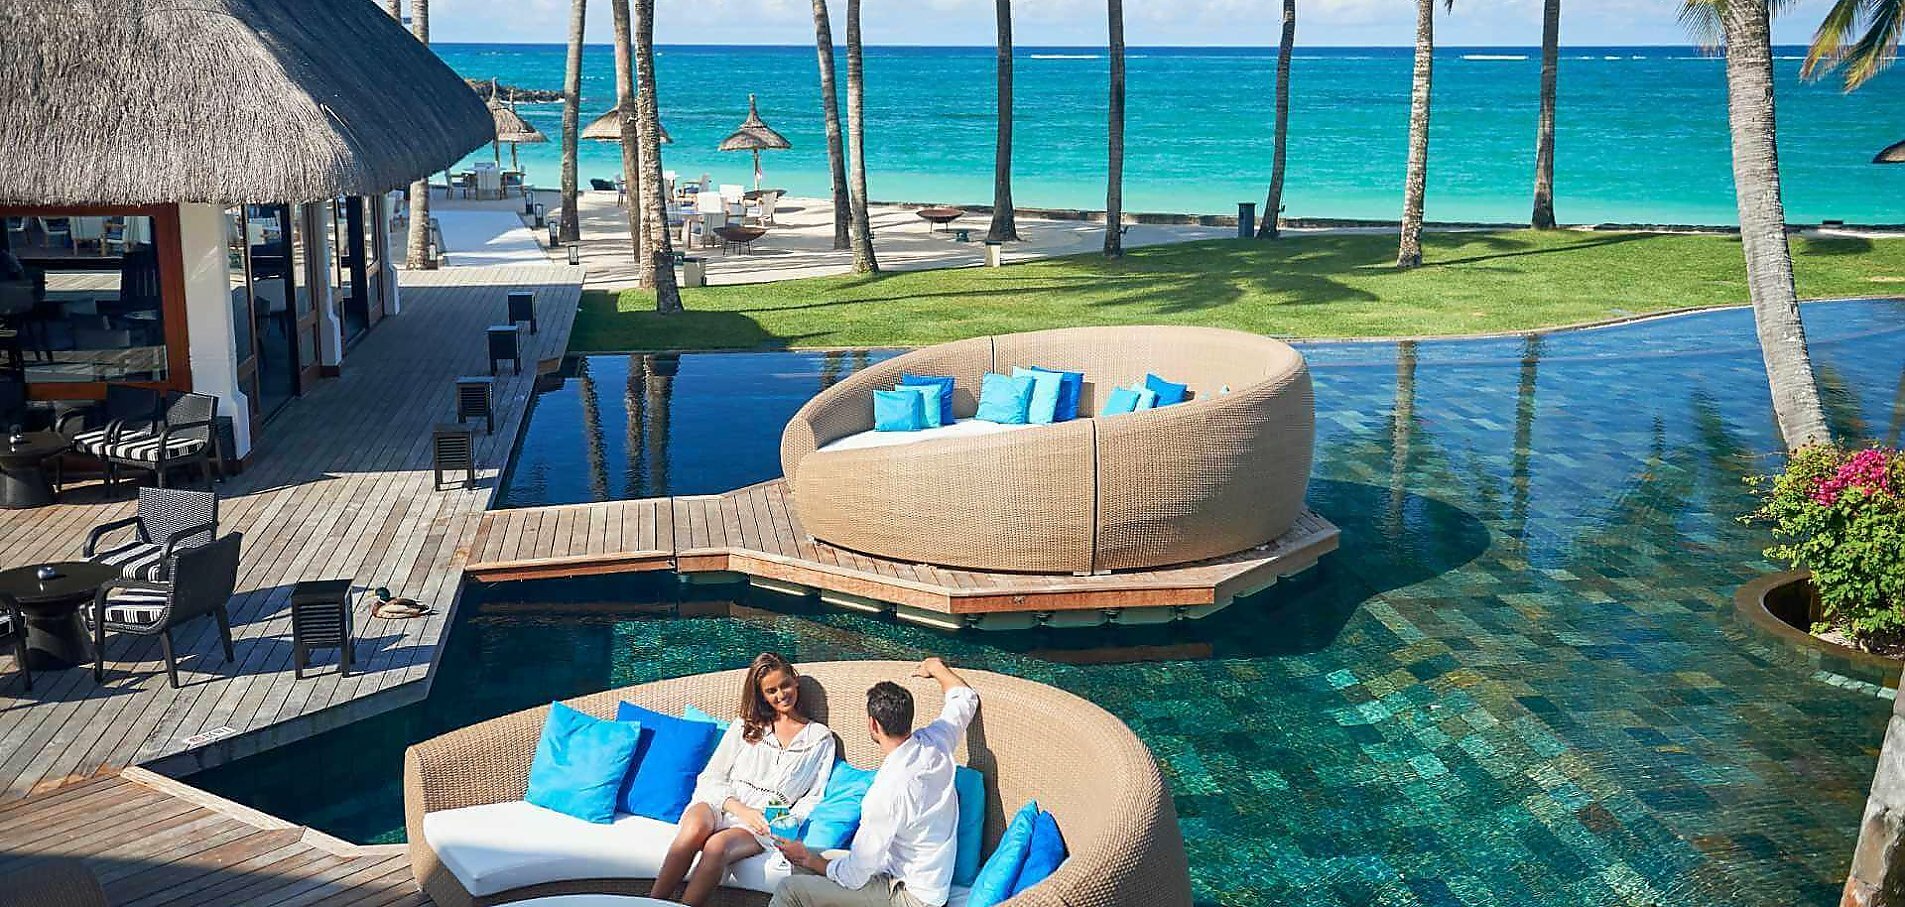 Ung par sidder og snakker i loungesofa, som er bygget på bro i svimmingpool med palmetræer og Mauritius strand i baggrund på resortet Constance Belle Mare Plage 